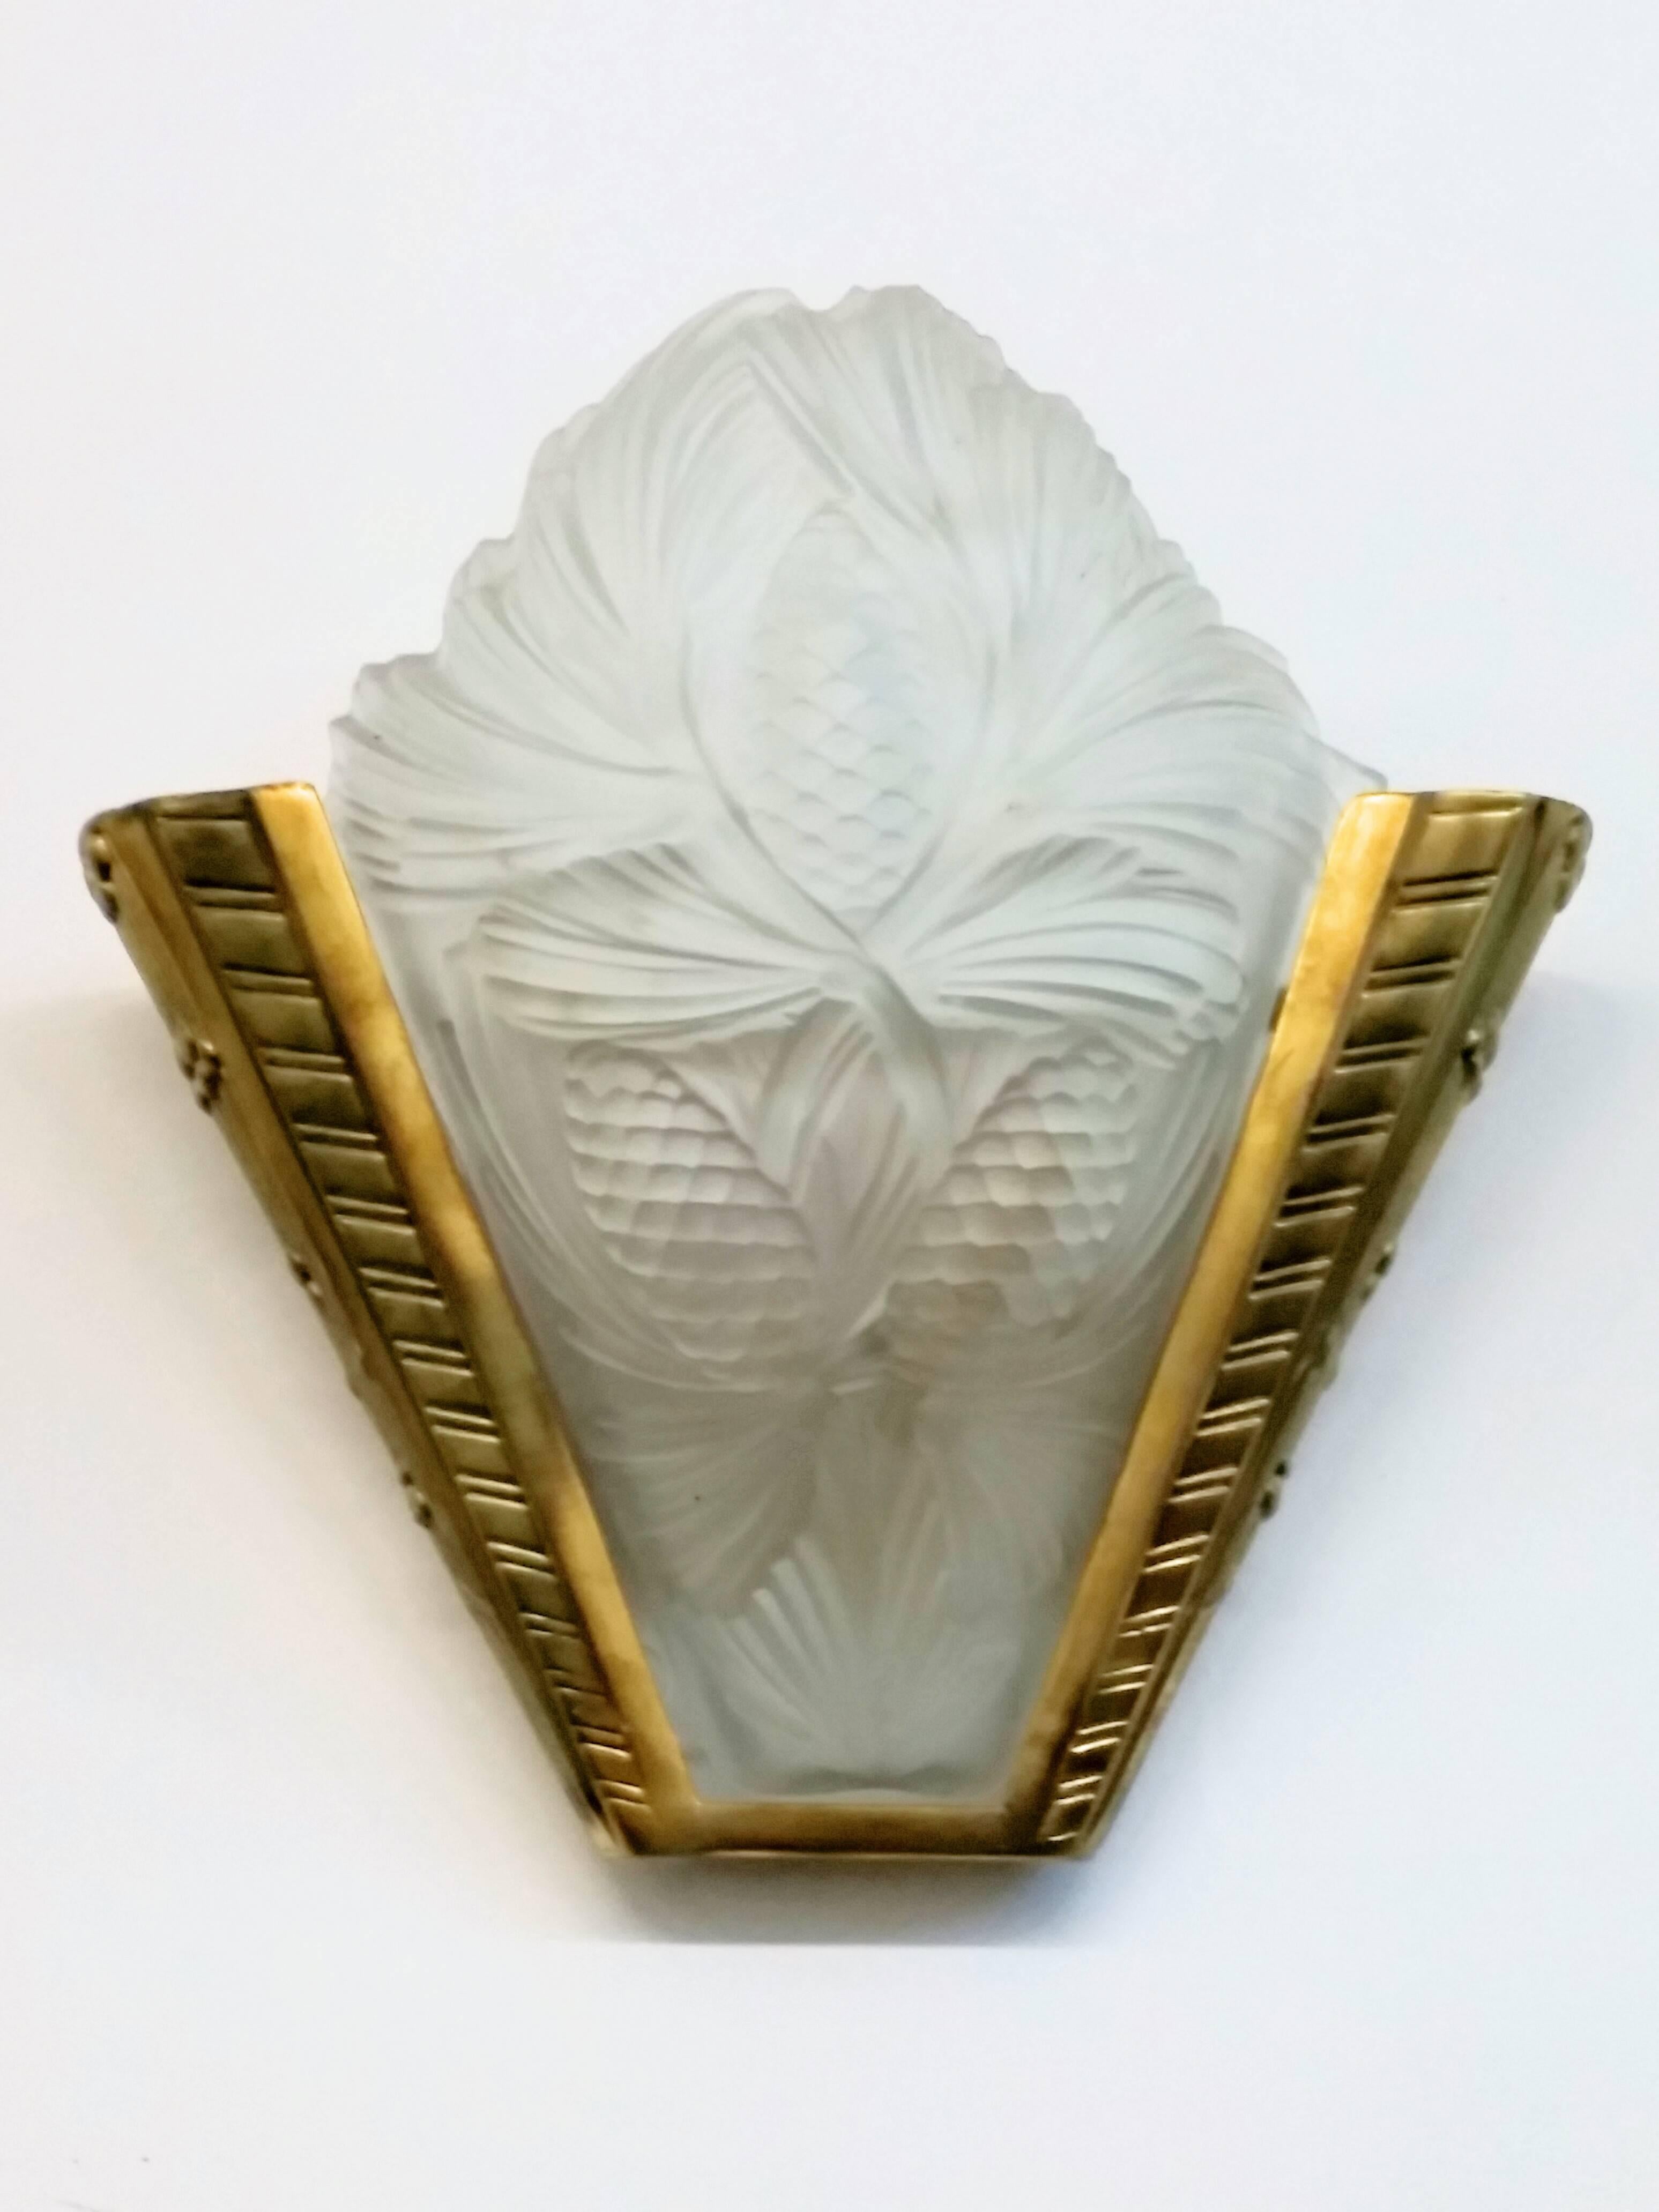 Ein Paar französischer Art-Deco-Wandleuchter aus geformtem Milchglas mit Tannenzapfenmotiv und polierten Details in gutem Zustand. Sie ruhen in Bronzerahmen mit geometrischen Motiven. Die Wandleuchten wurden für die US-Normen umverdrahtet. Jede